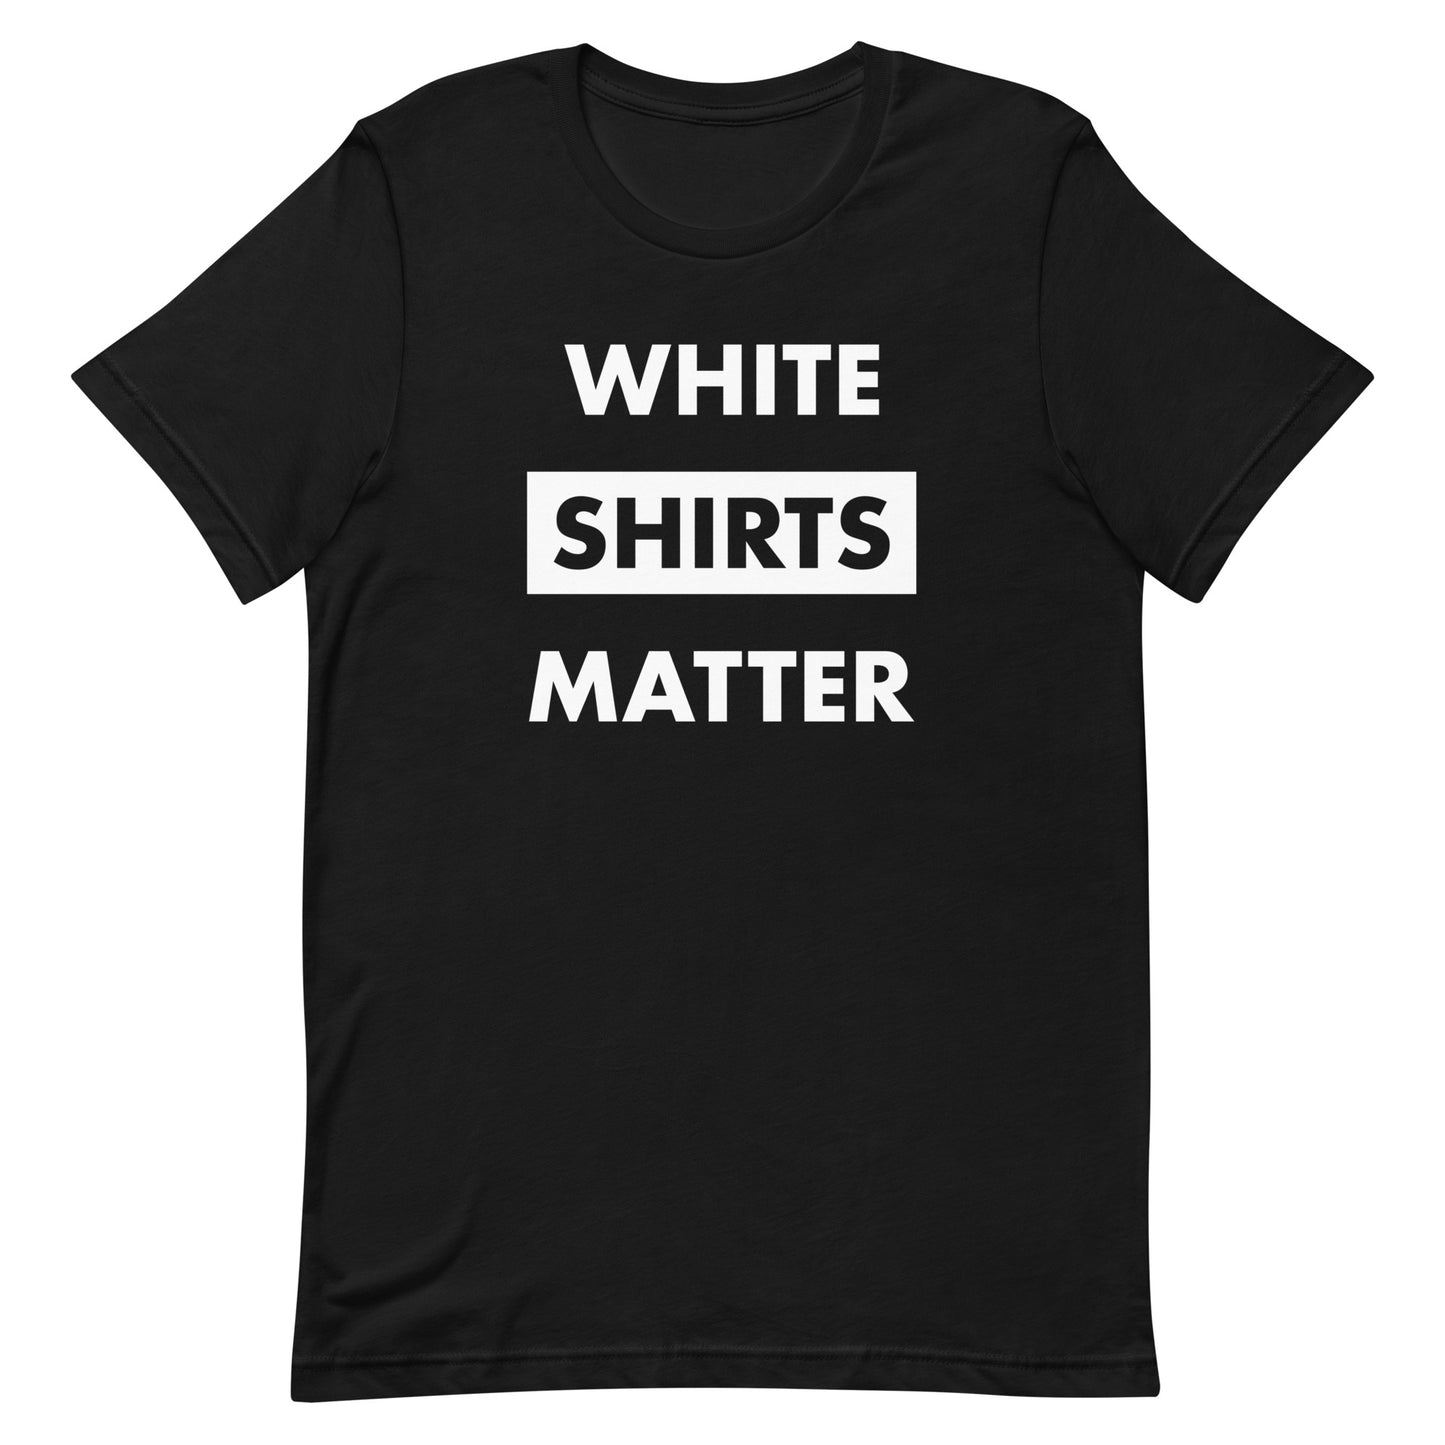 White Shirts Matter T-shirts